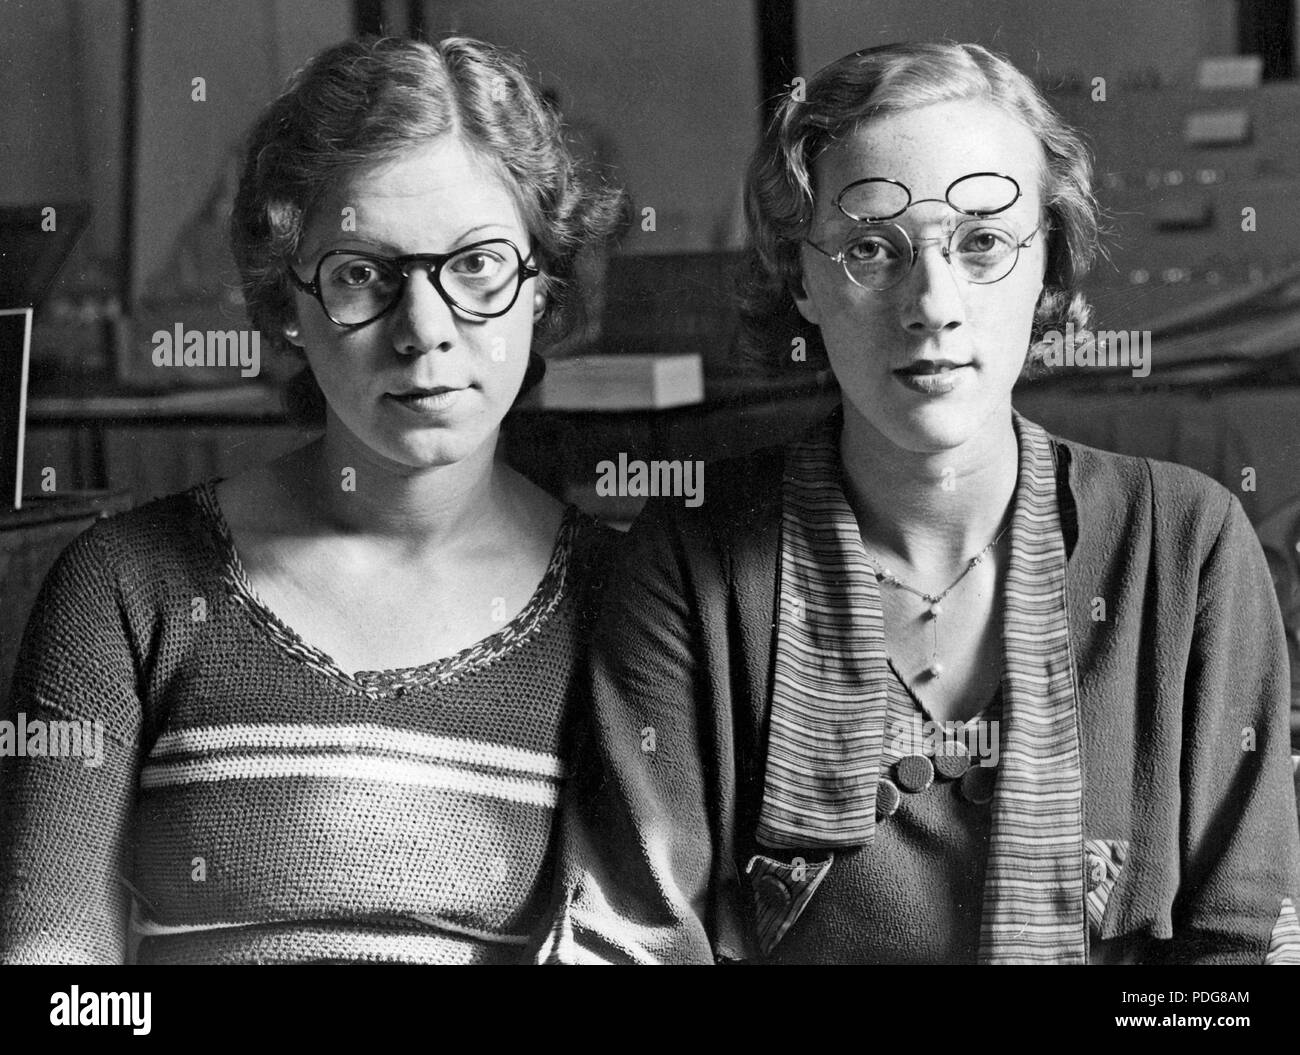 1930 verres. Deux femmes chacune portant une paire de lunettes présentées comme la nouvelle forme de lunettes et des archets. À gauche 1935 ans forme des verres et bow. Le droit à une paire de lunettes avec qui combine deux jeux de lentilles. Un ensemble pour la lecture et l'autre pour l'usure, facilement plié vers le haut et vers le bas en fonction de la situation. Angleterre 1935 Banque D'Images